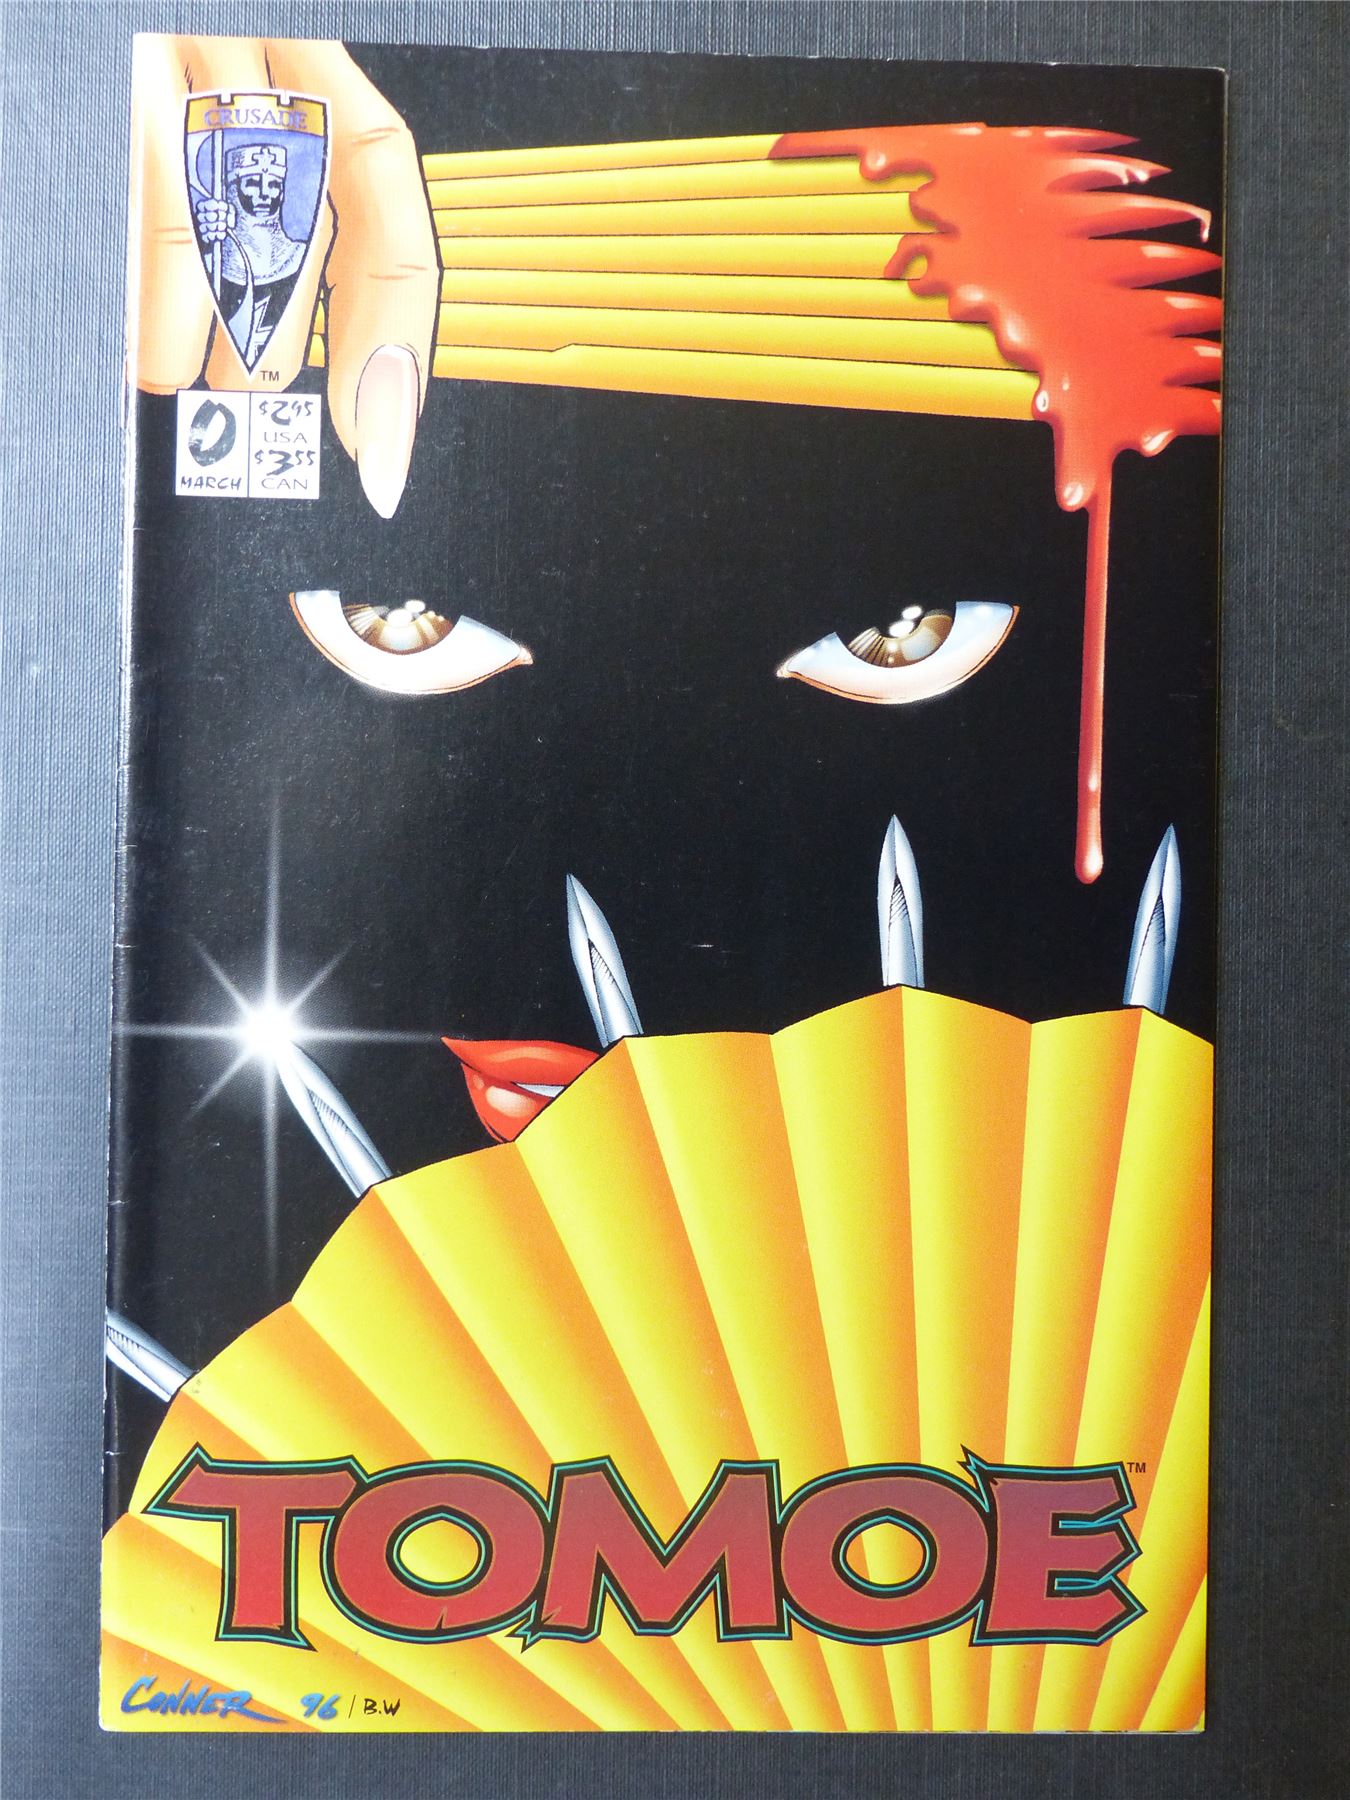 TOMOE #0 - Crusade Comics #22M